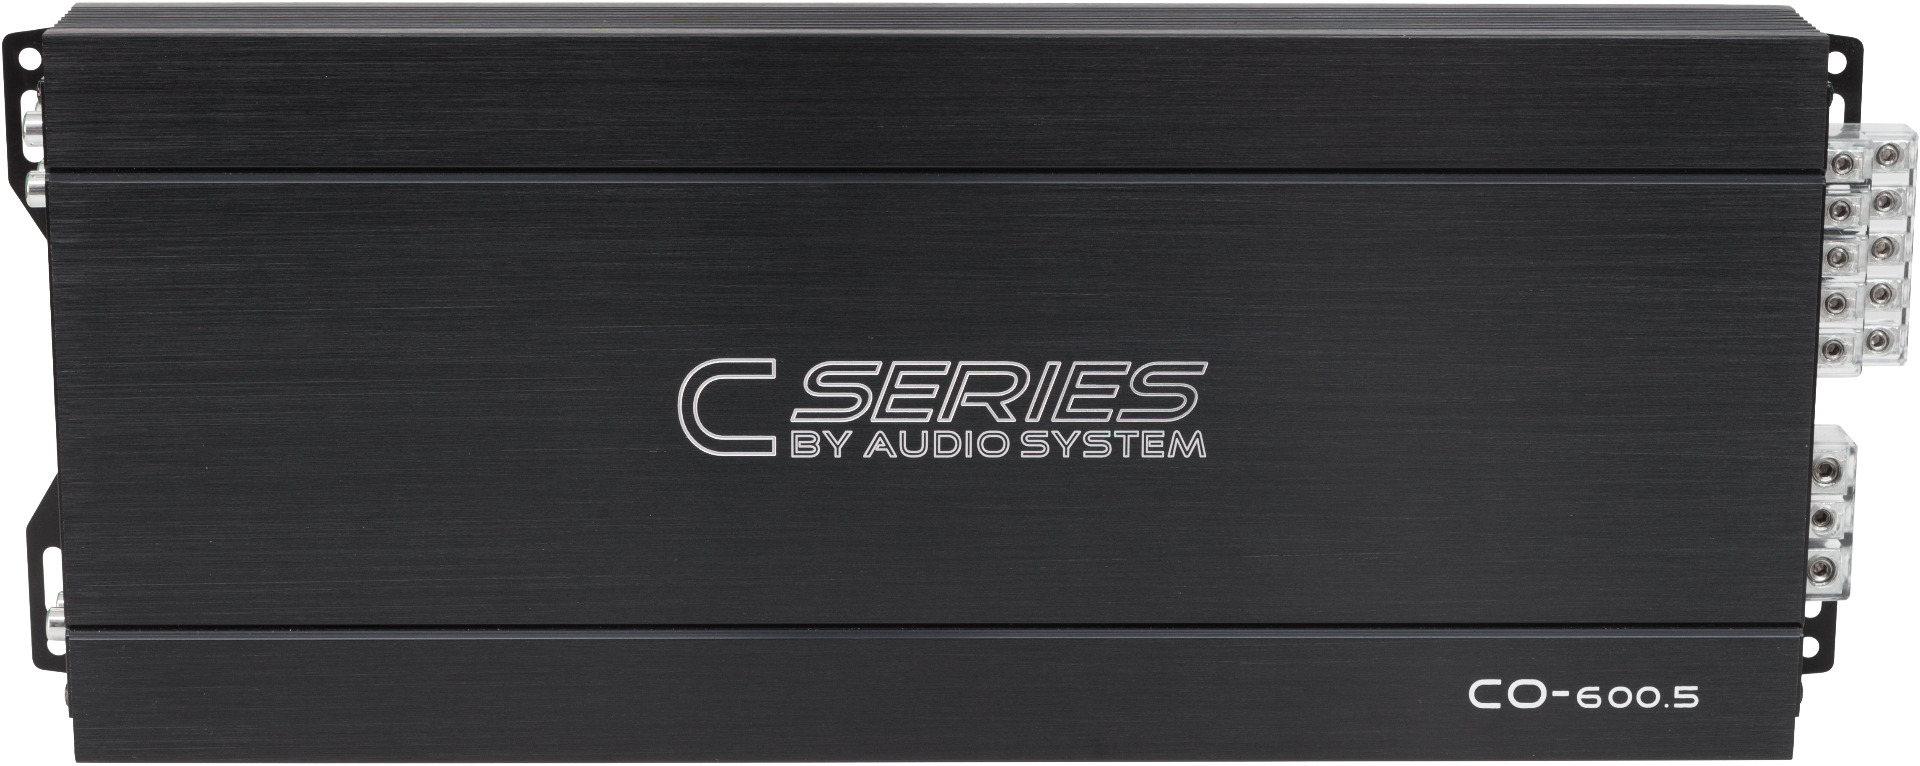 Audio System CO-600.5 5-Kanal Class A/B Hochleistungs-Verstärker + RTC Kabelfernbedienung